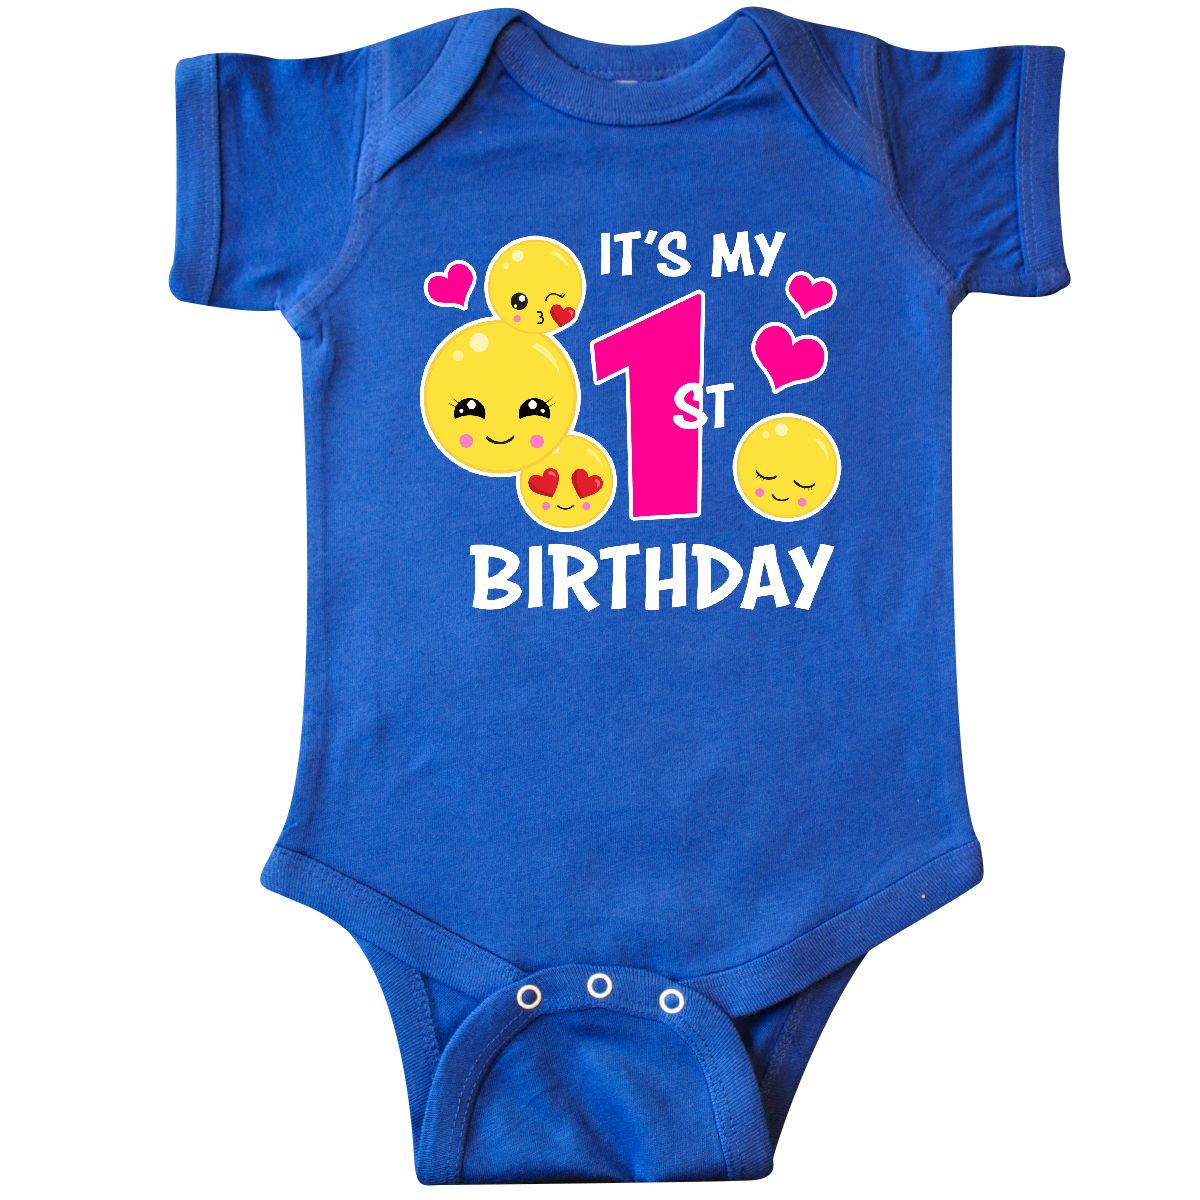 Inktastic Inktastic Its My 1st Birthday With Emojis Infant Bodysuit